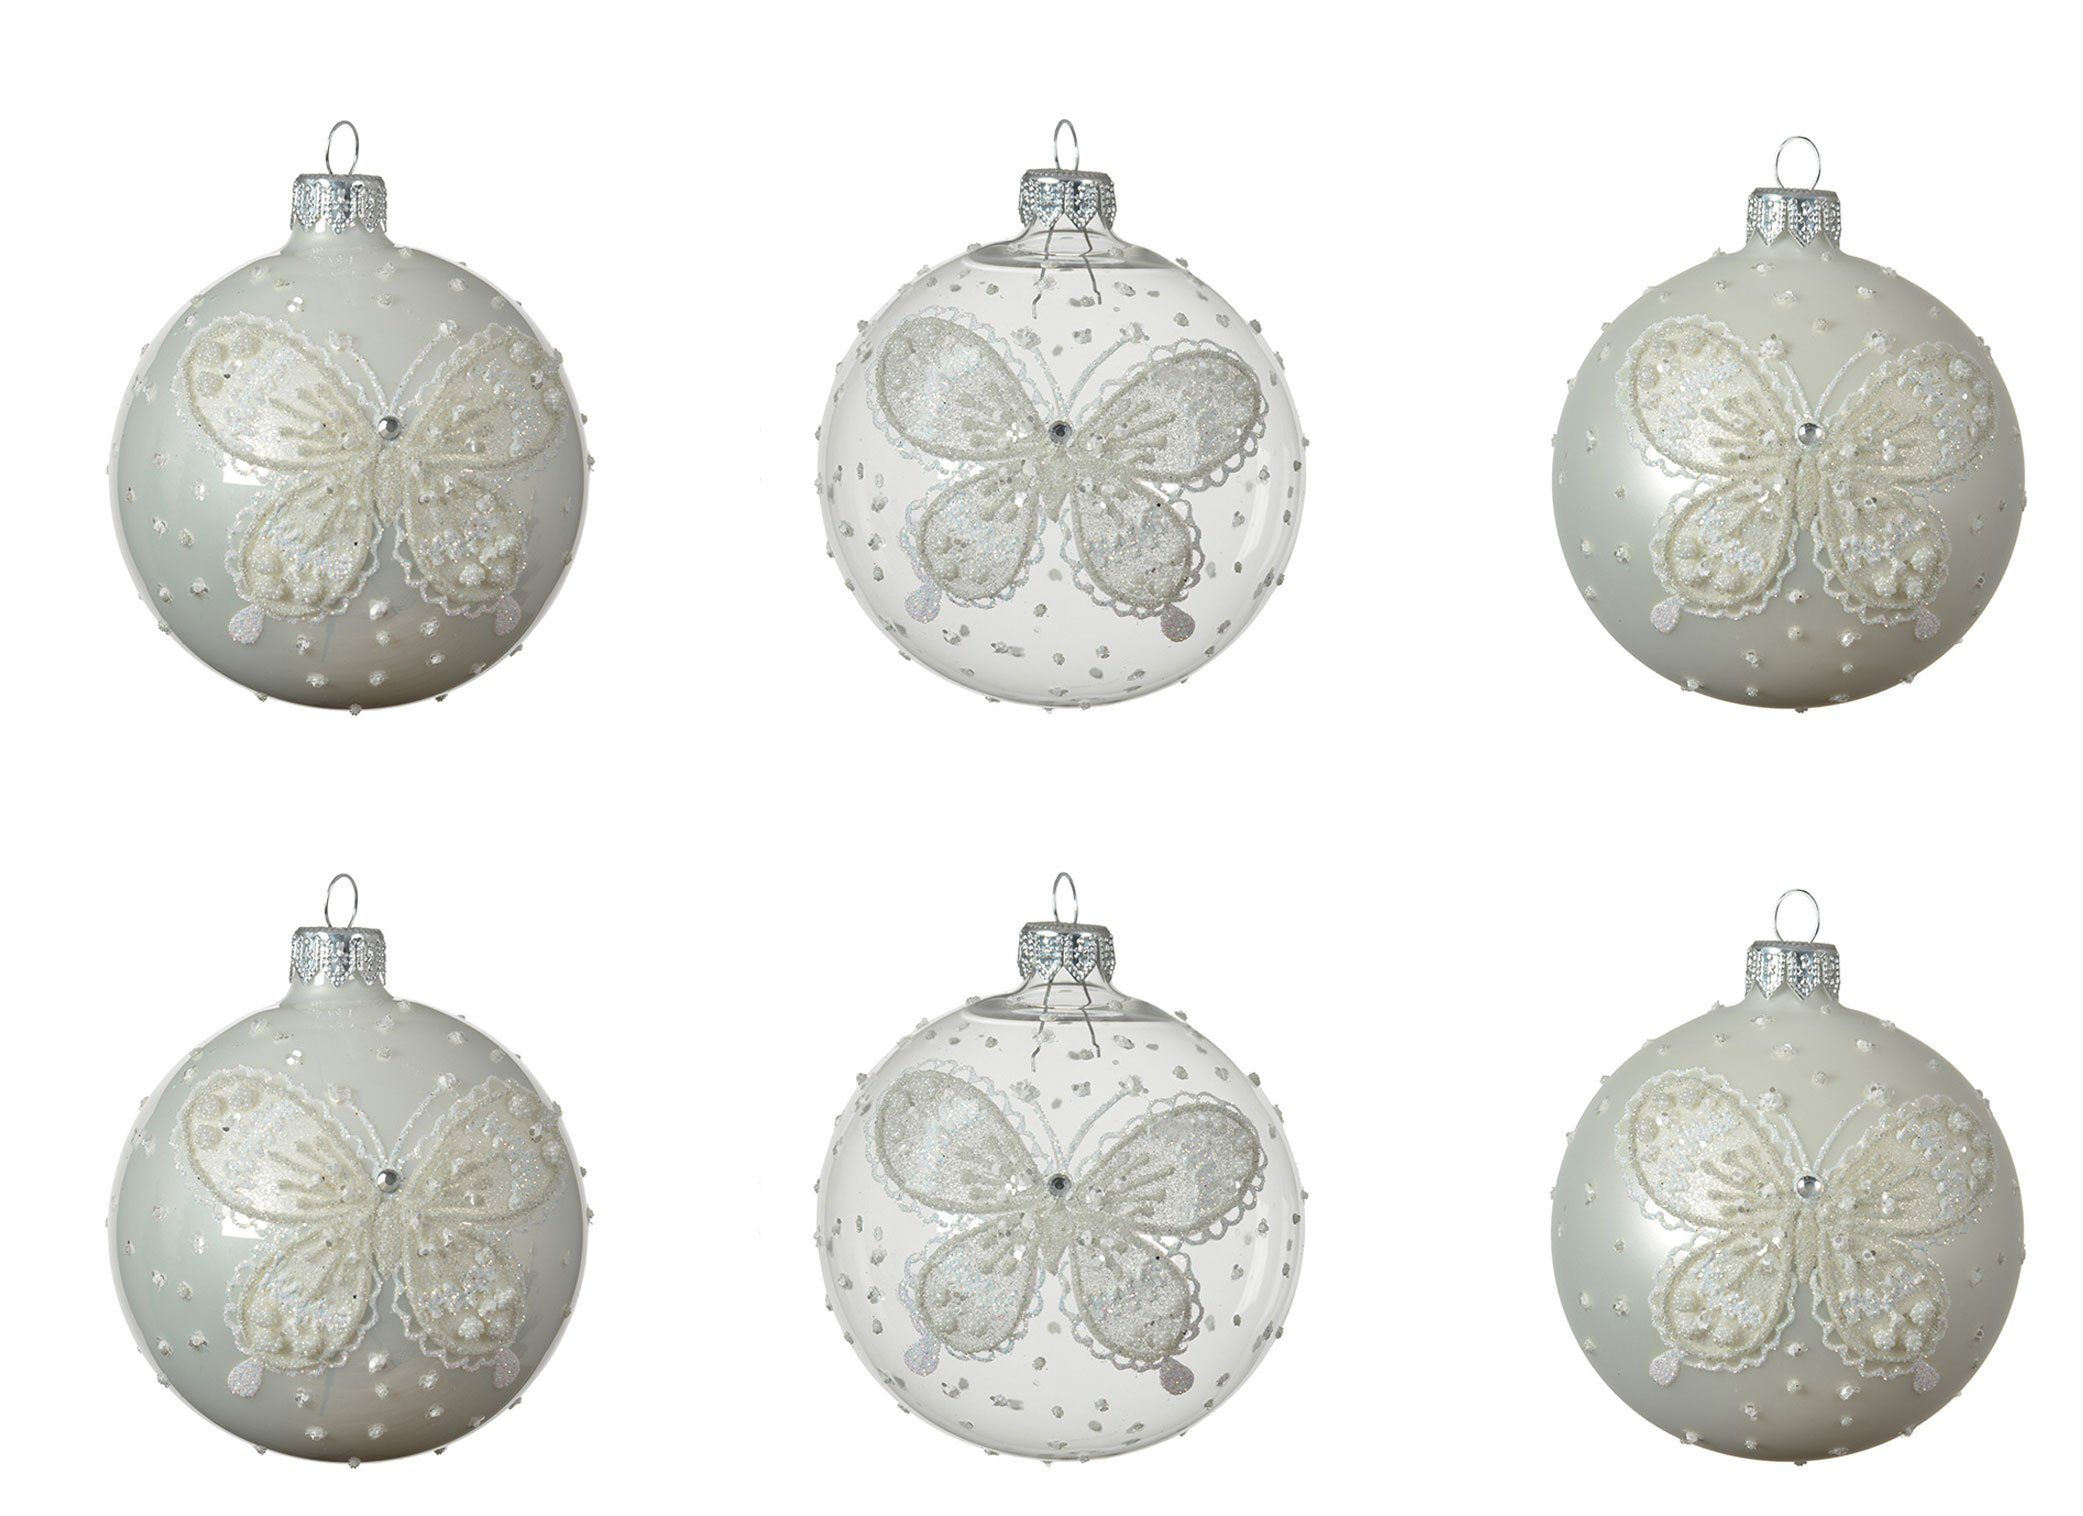 Decoris season decorations Weihnachtsbaumkugel, Weihnachtskugeln Glas mit Motiv Schmetterling 8cm klar / weiß, 6er Set